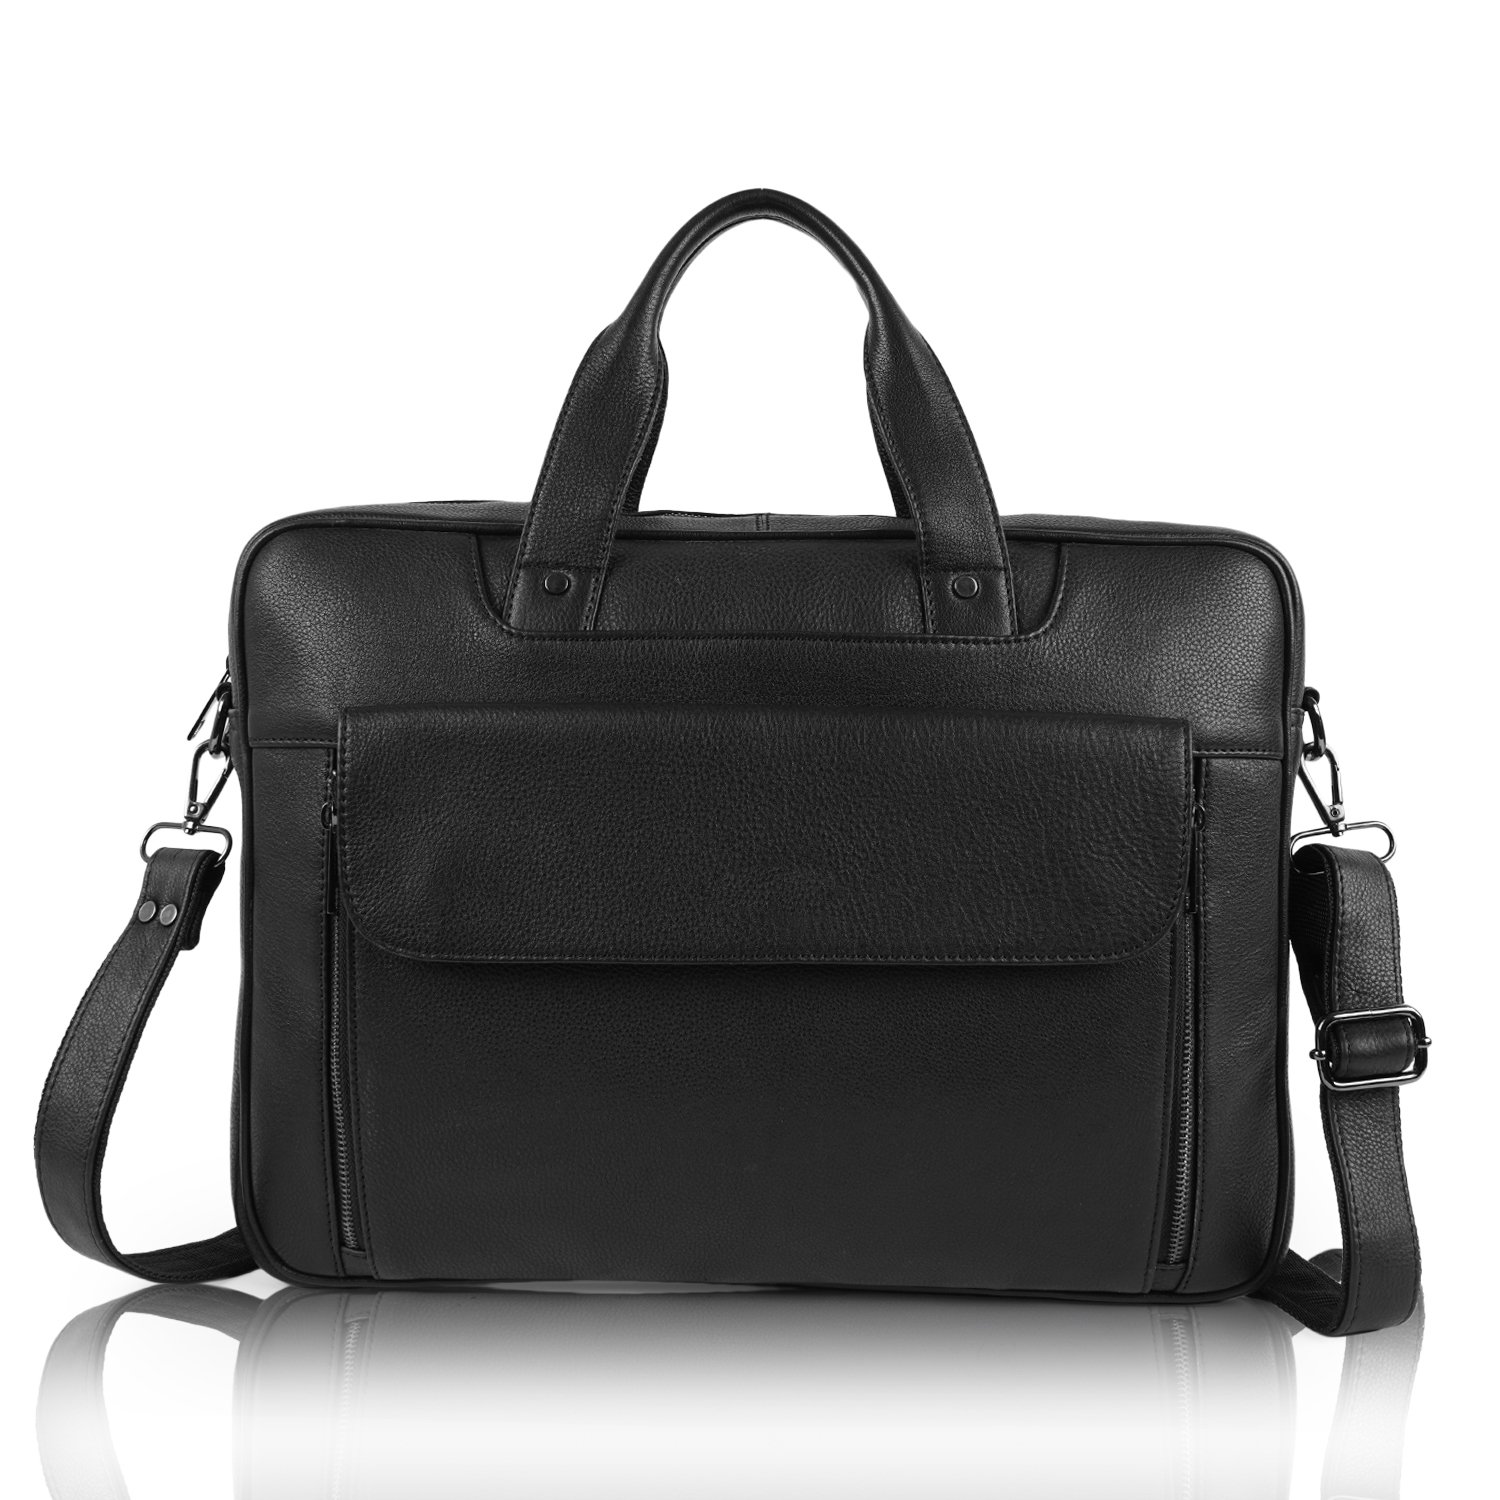 Stylish Leather Messenger Bag Manufacturer